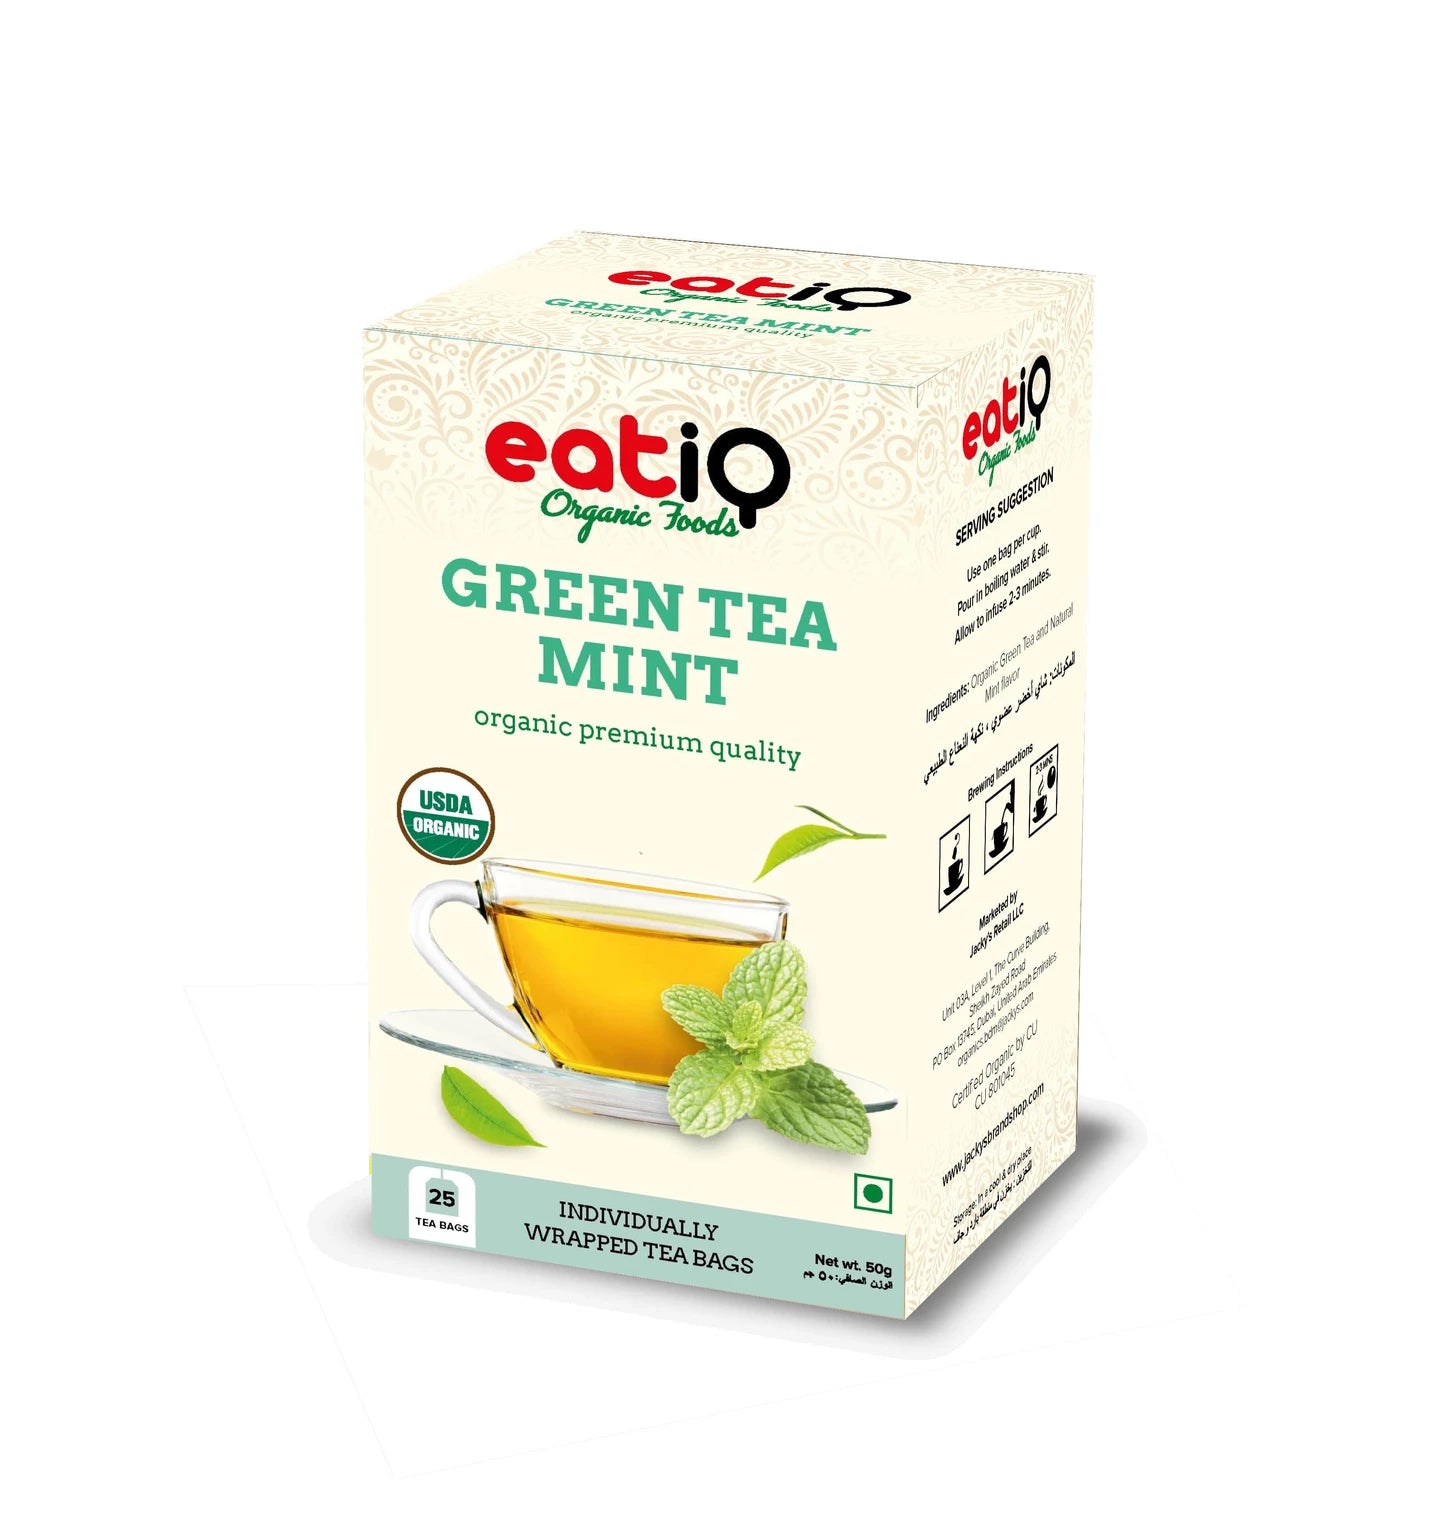 EATIQ ORGANIC FOODS Green Tea Mint, 50g